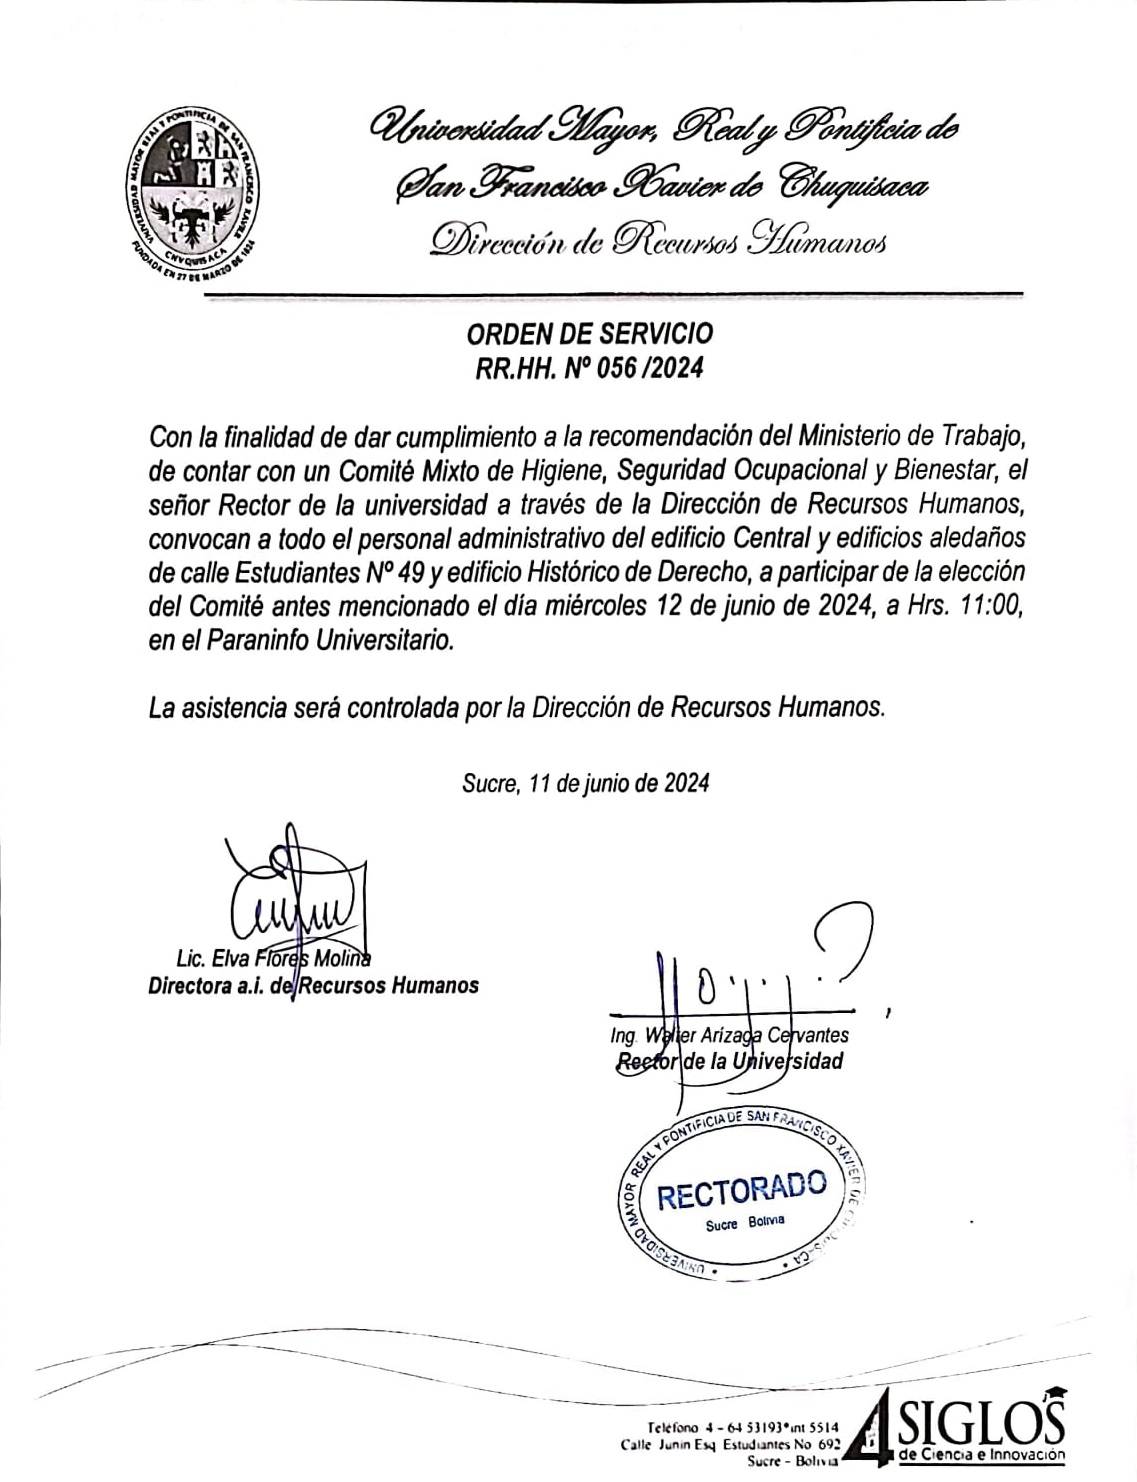 ORDEN DE SERVICIO RR.HH. Nº 056/2024, COMITÉ MIXTO DE HIGIENE Y SEGURIDAD OCUPACIONAL